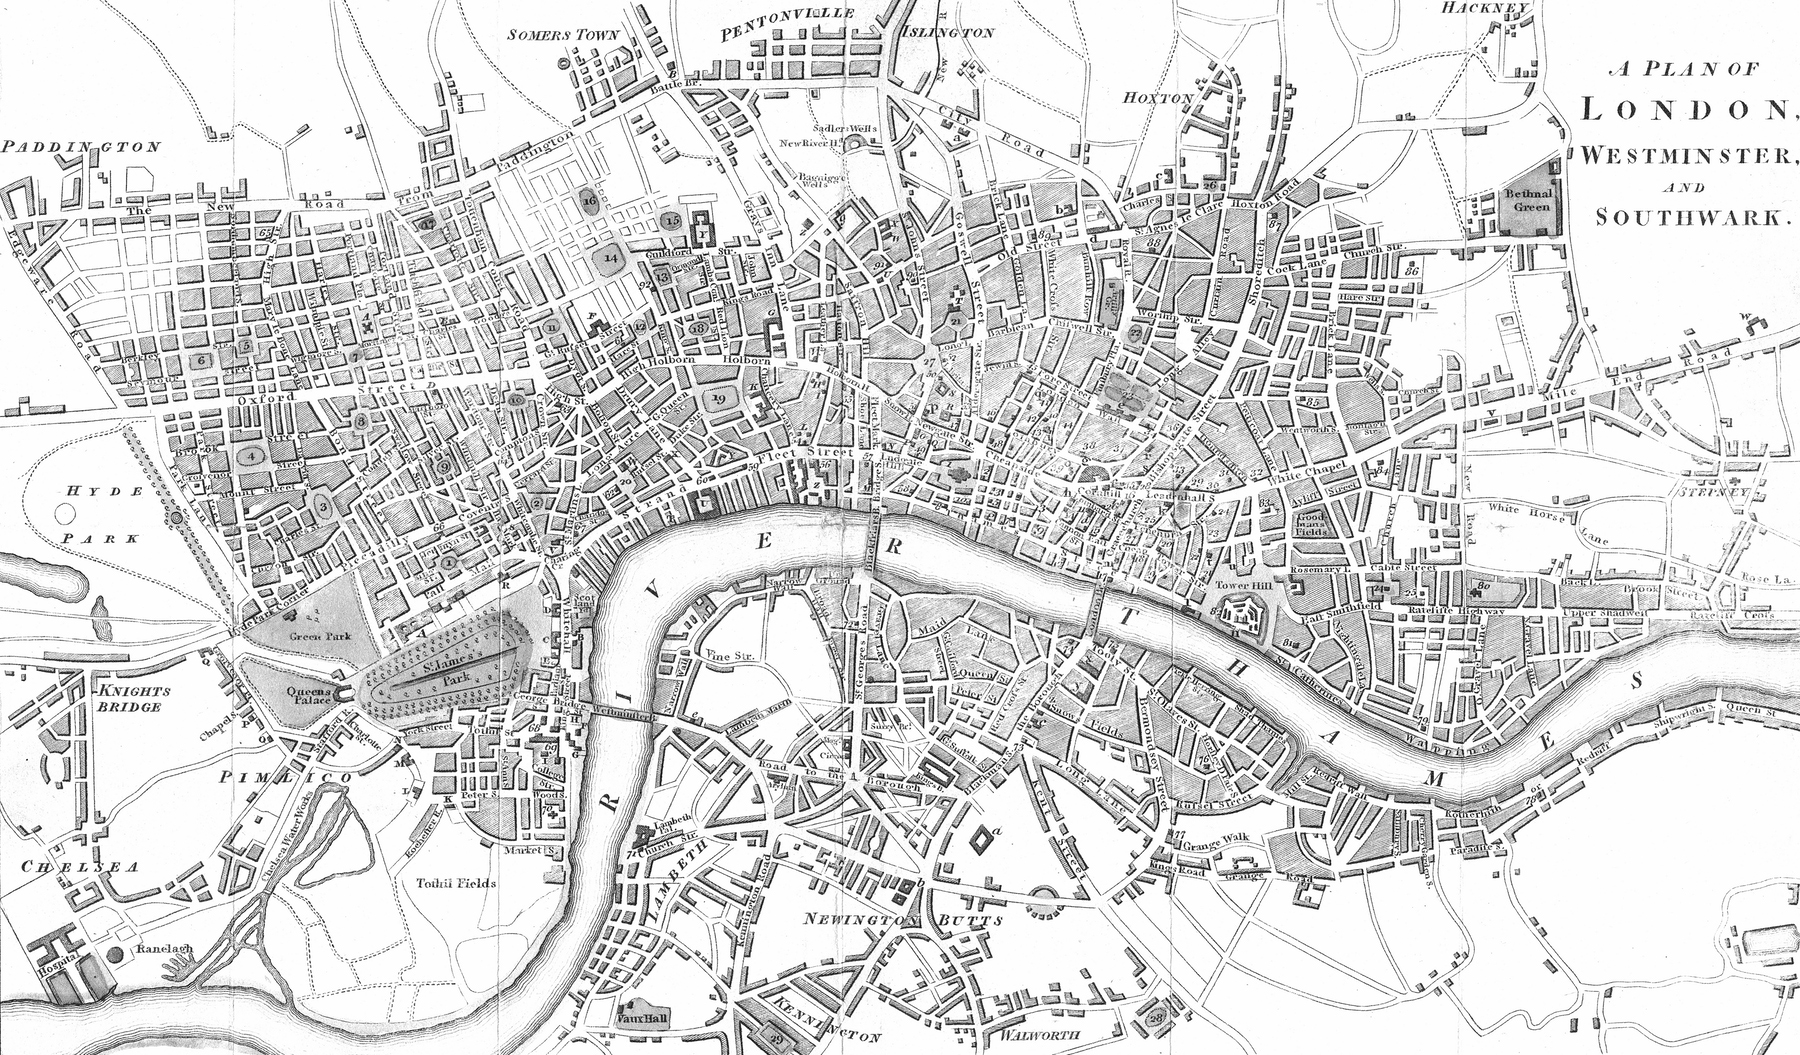 Buy London Map Wallpaper Free Us Shipping At Happywall Com